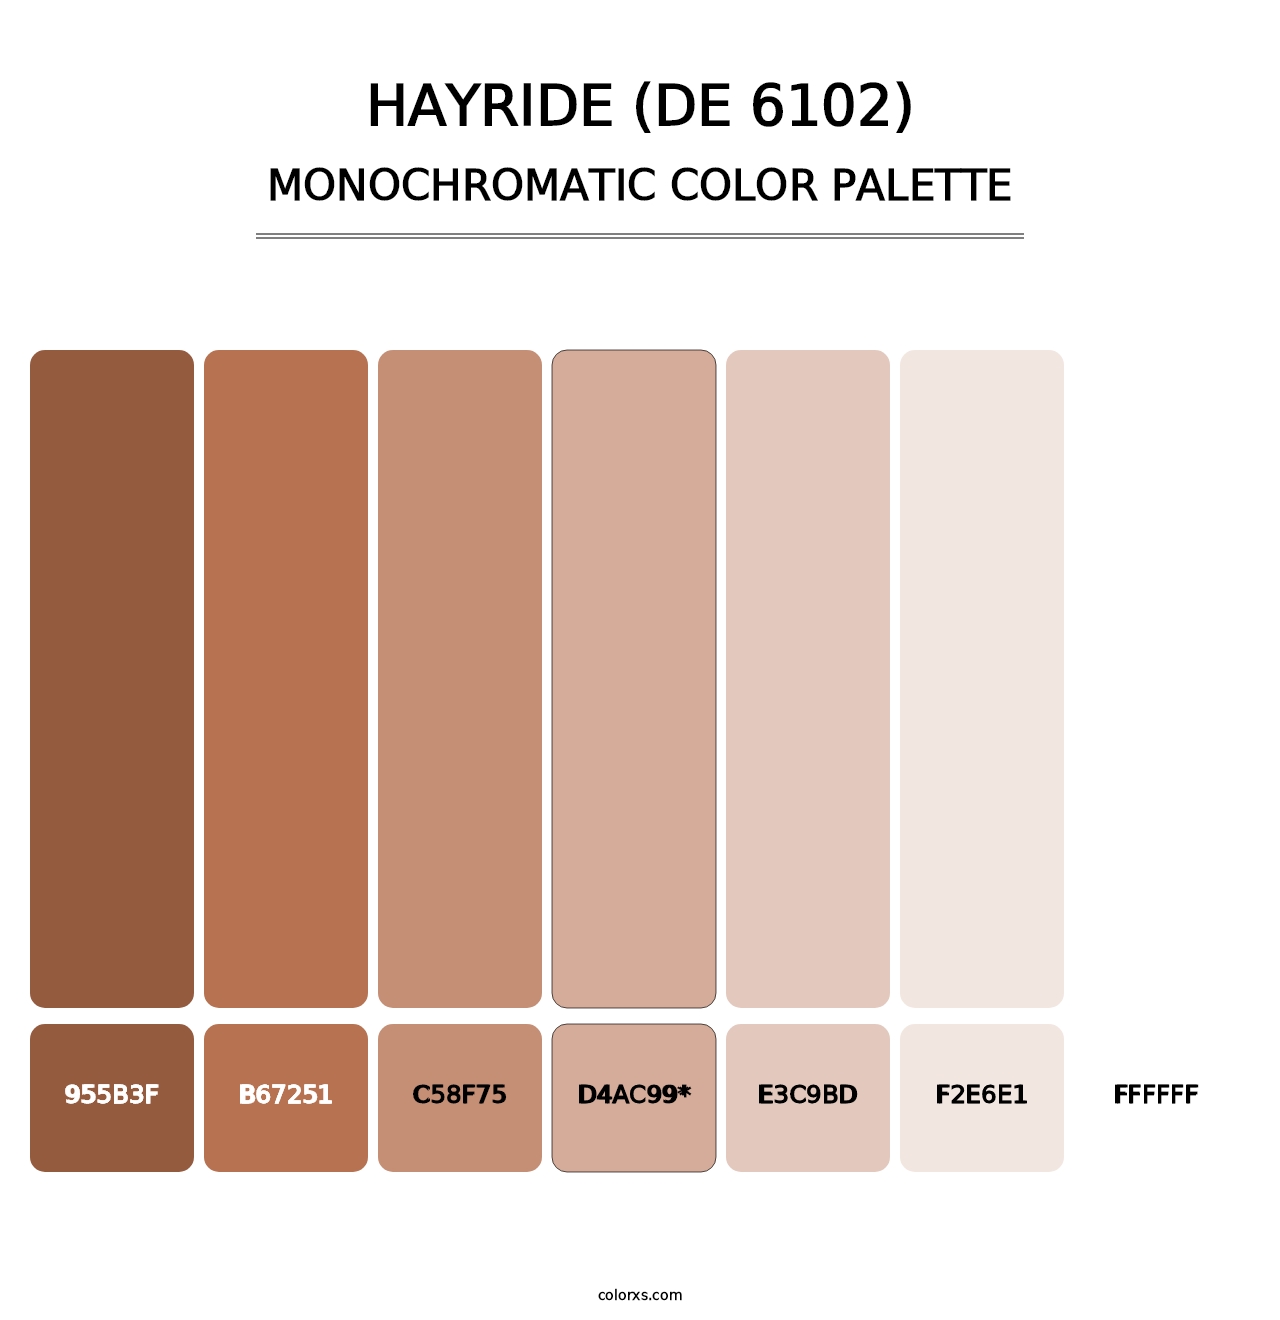 Hayride (DE 6102) - Monochromatic Color Palette